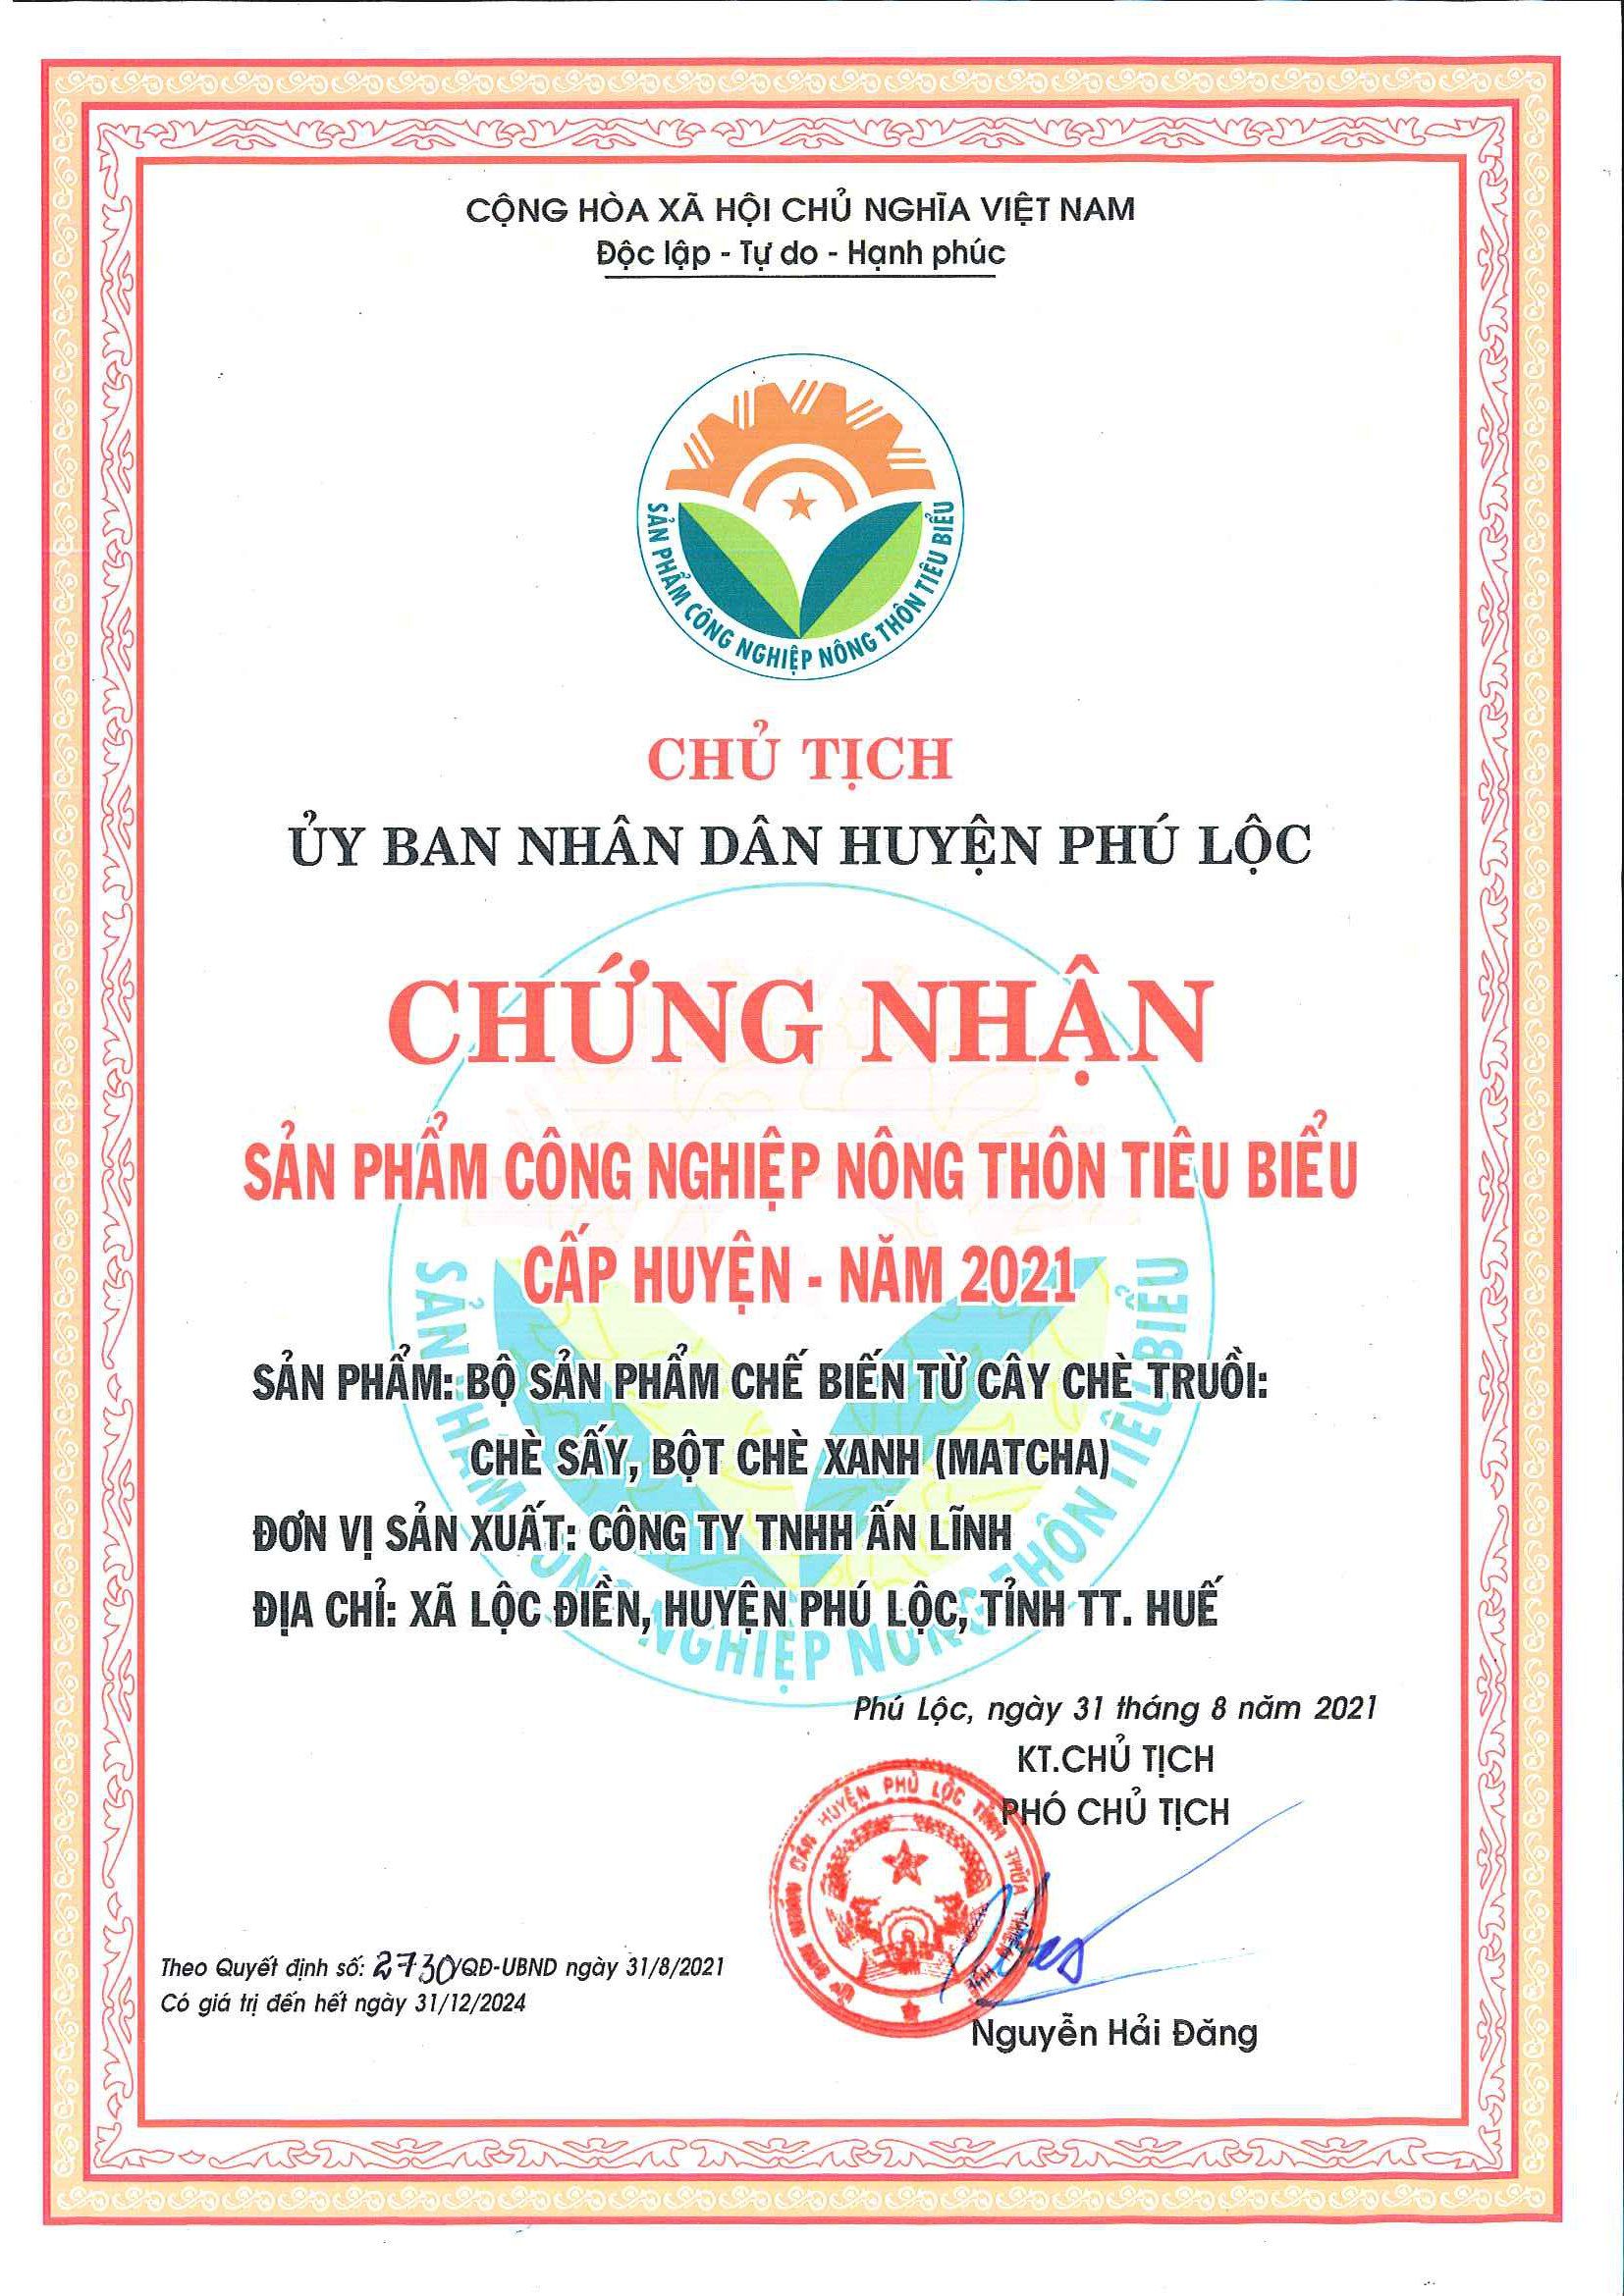 Giấy chứng nhận Nông Thôn tiêu biểu cấp Huyện Năm 2021 - Bancha  Tea An Linh